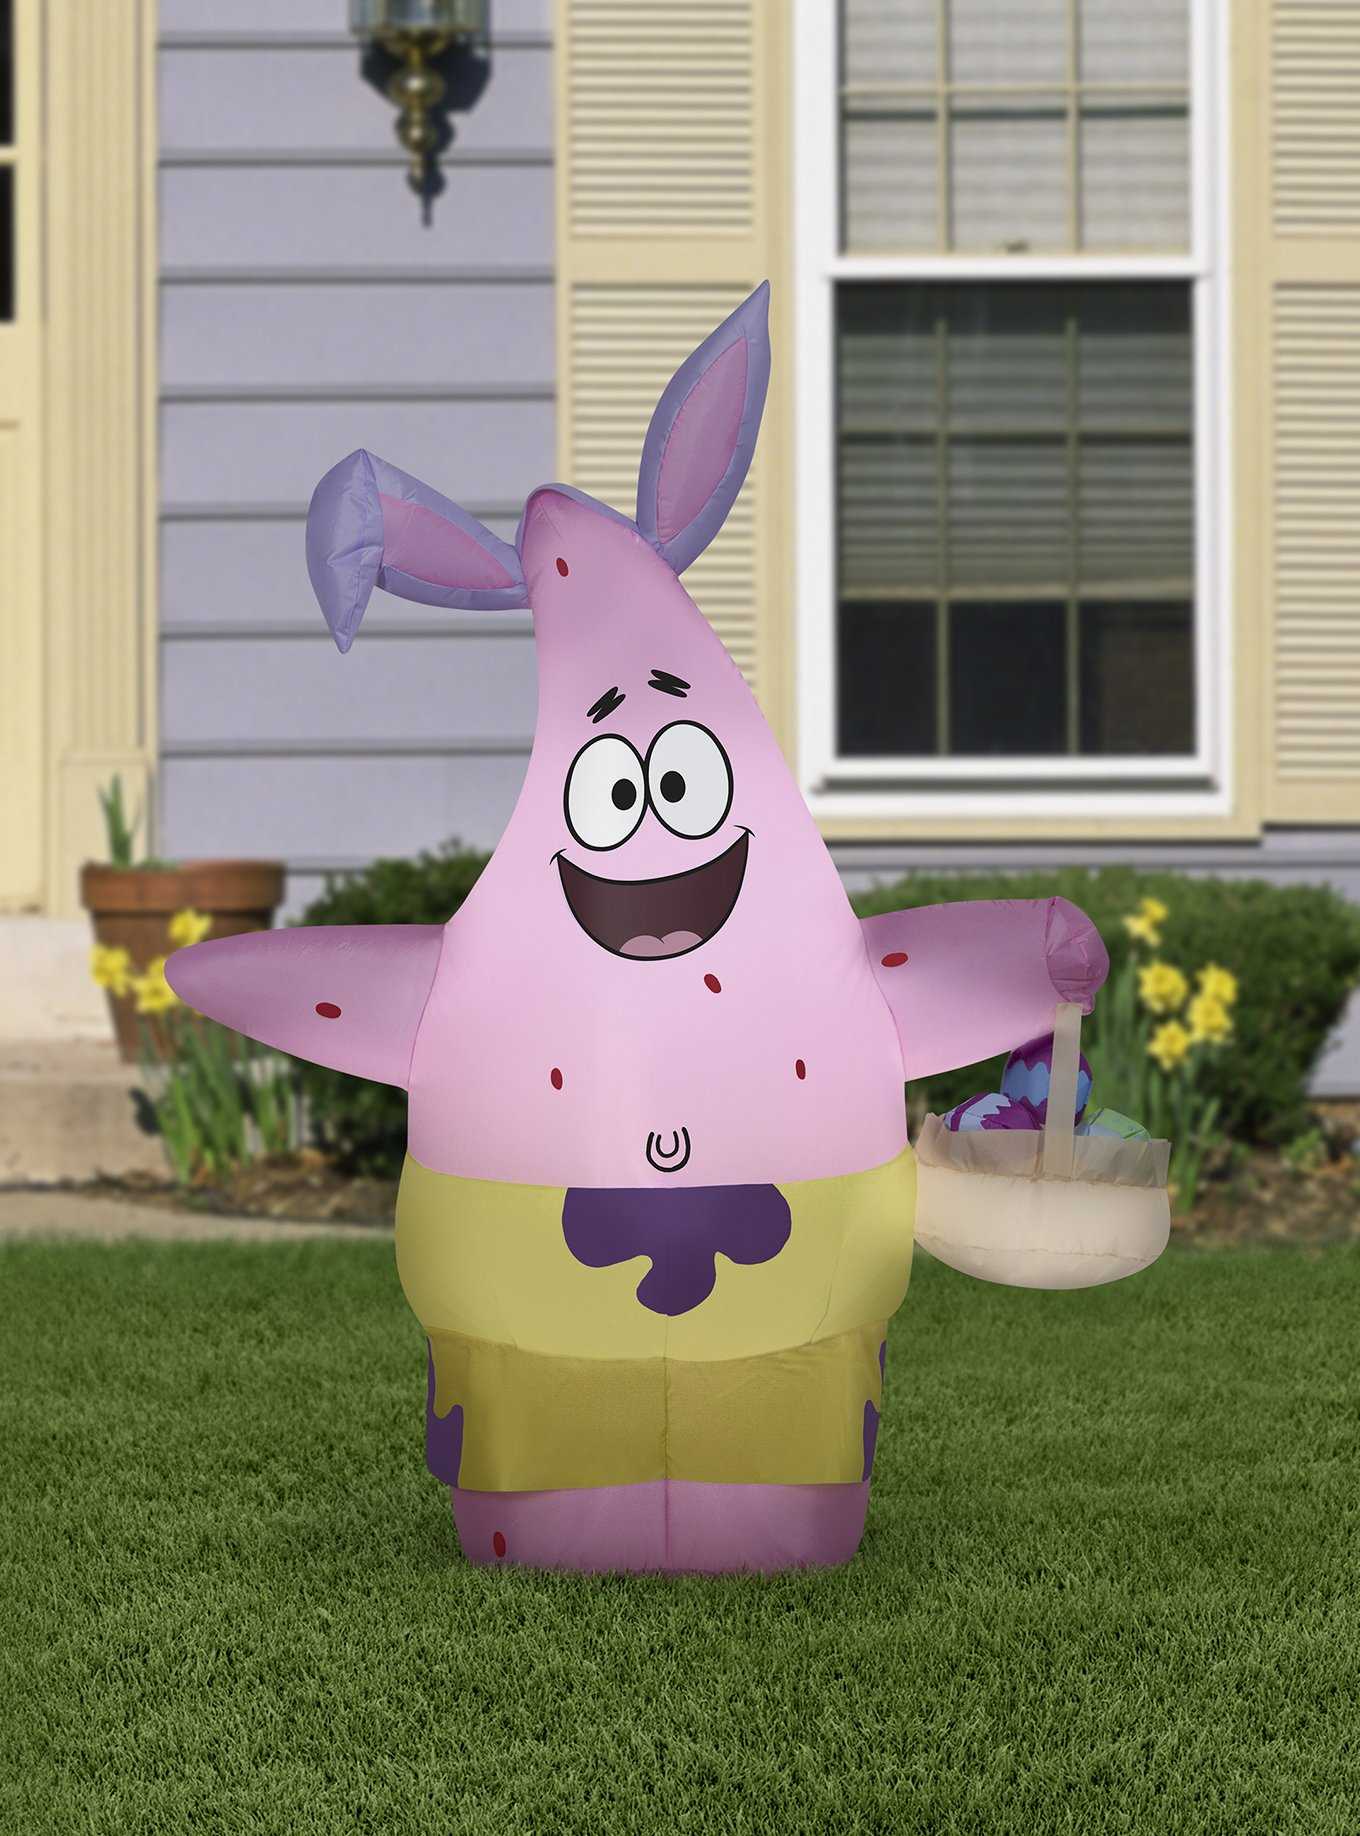 SpongeBob SquarePants Airblown Patrick in Easter Outfit, , hi-res